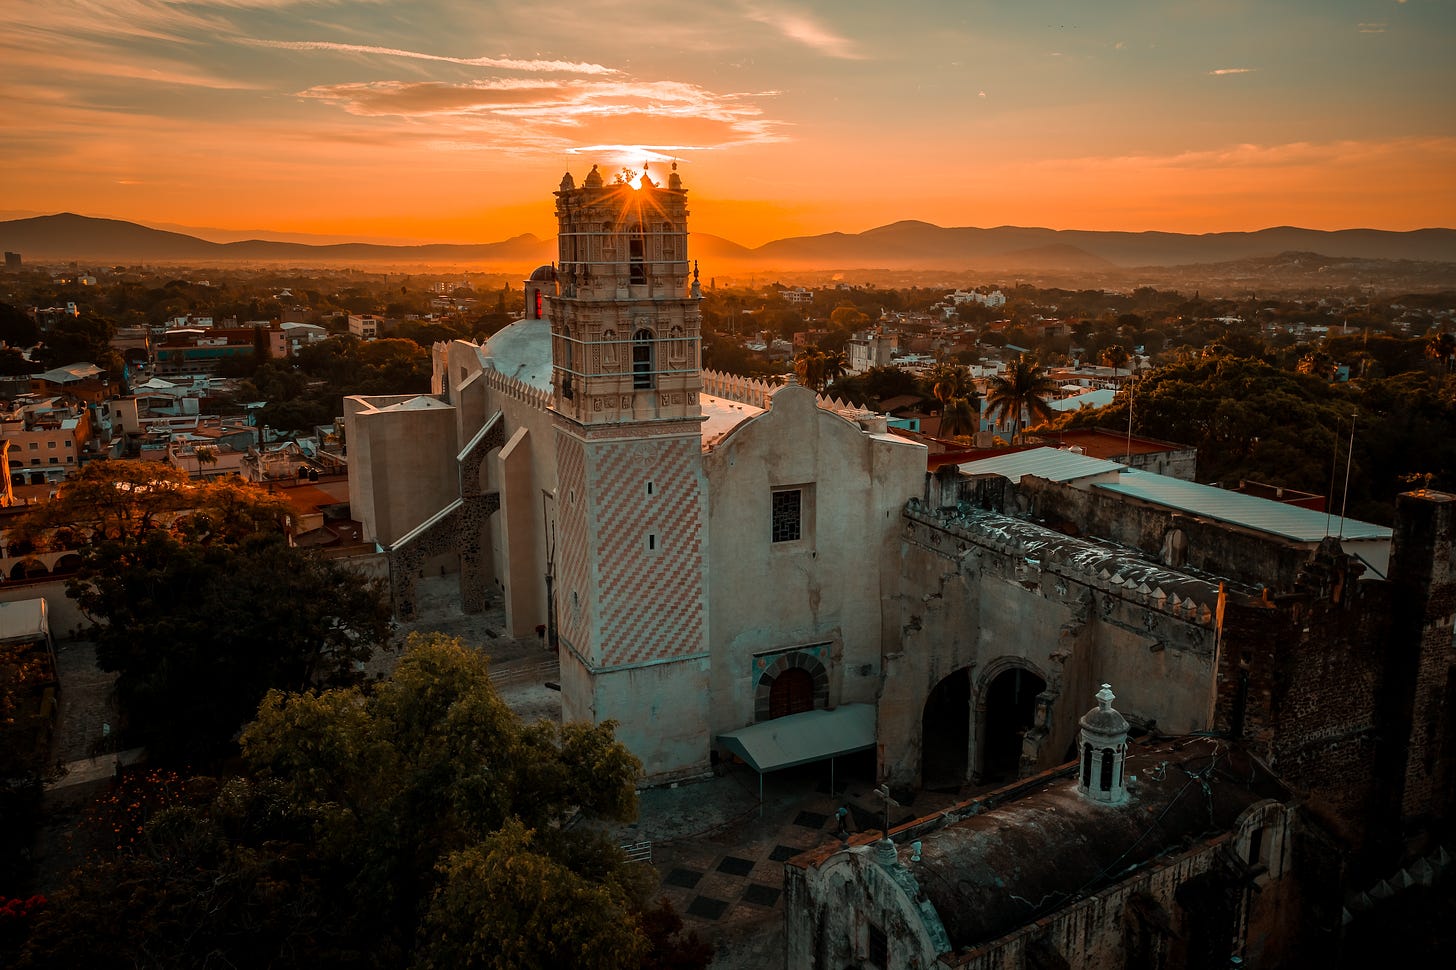 sunrise over cathedral in Cuernavaca, Morelos, Mexico